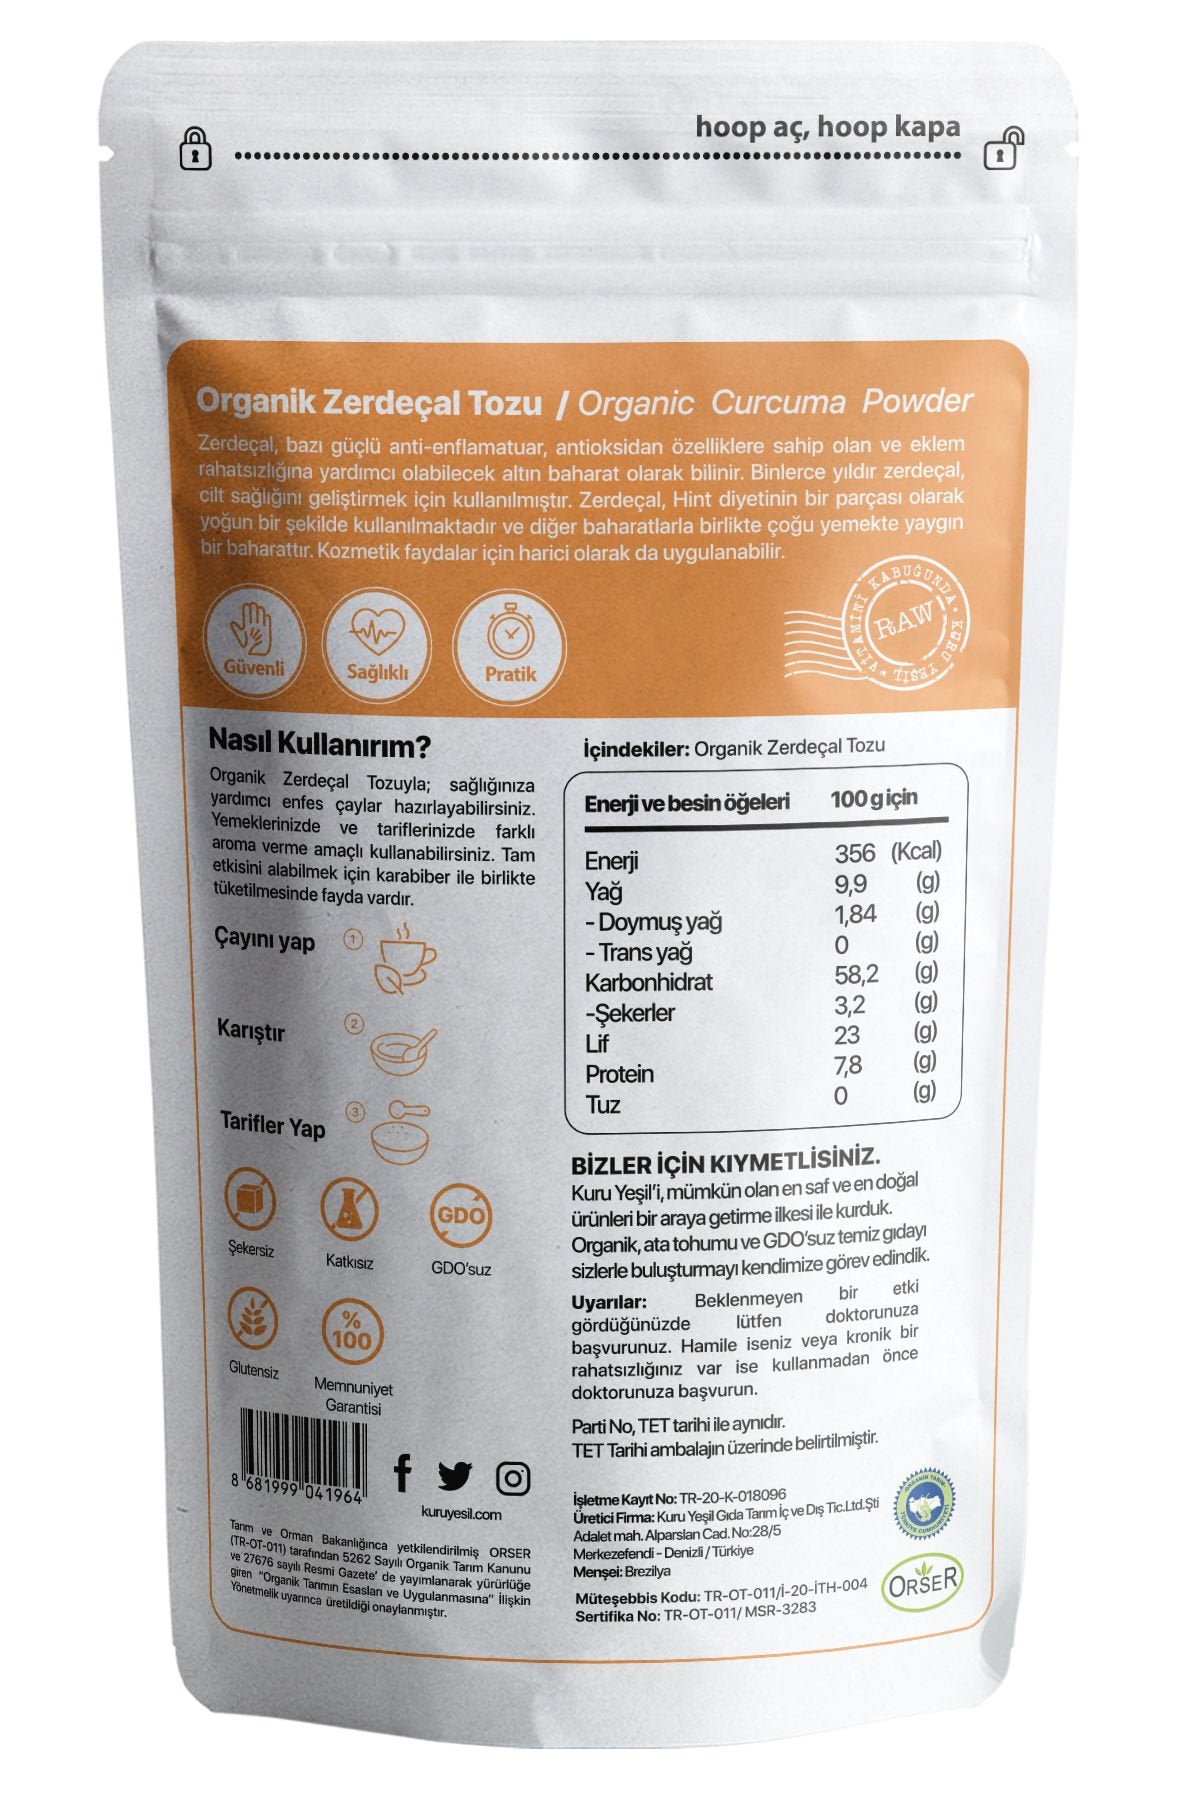 kuru yeşil organic turmeric powder 50g 2